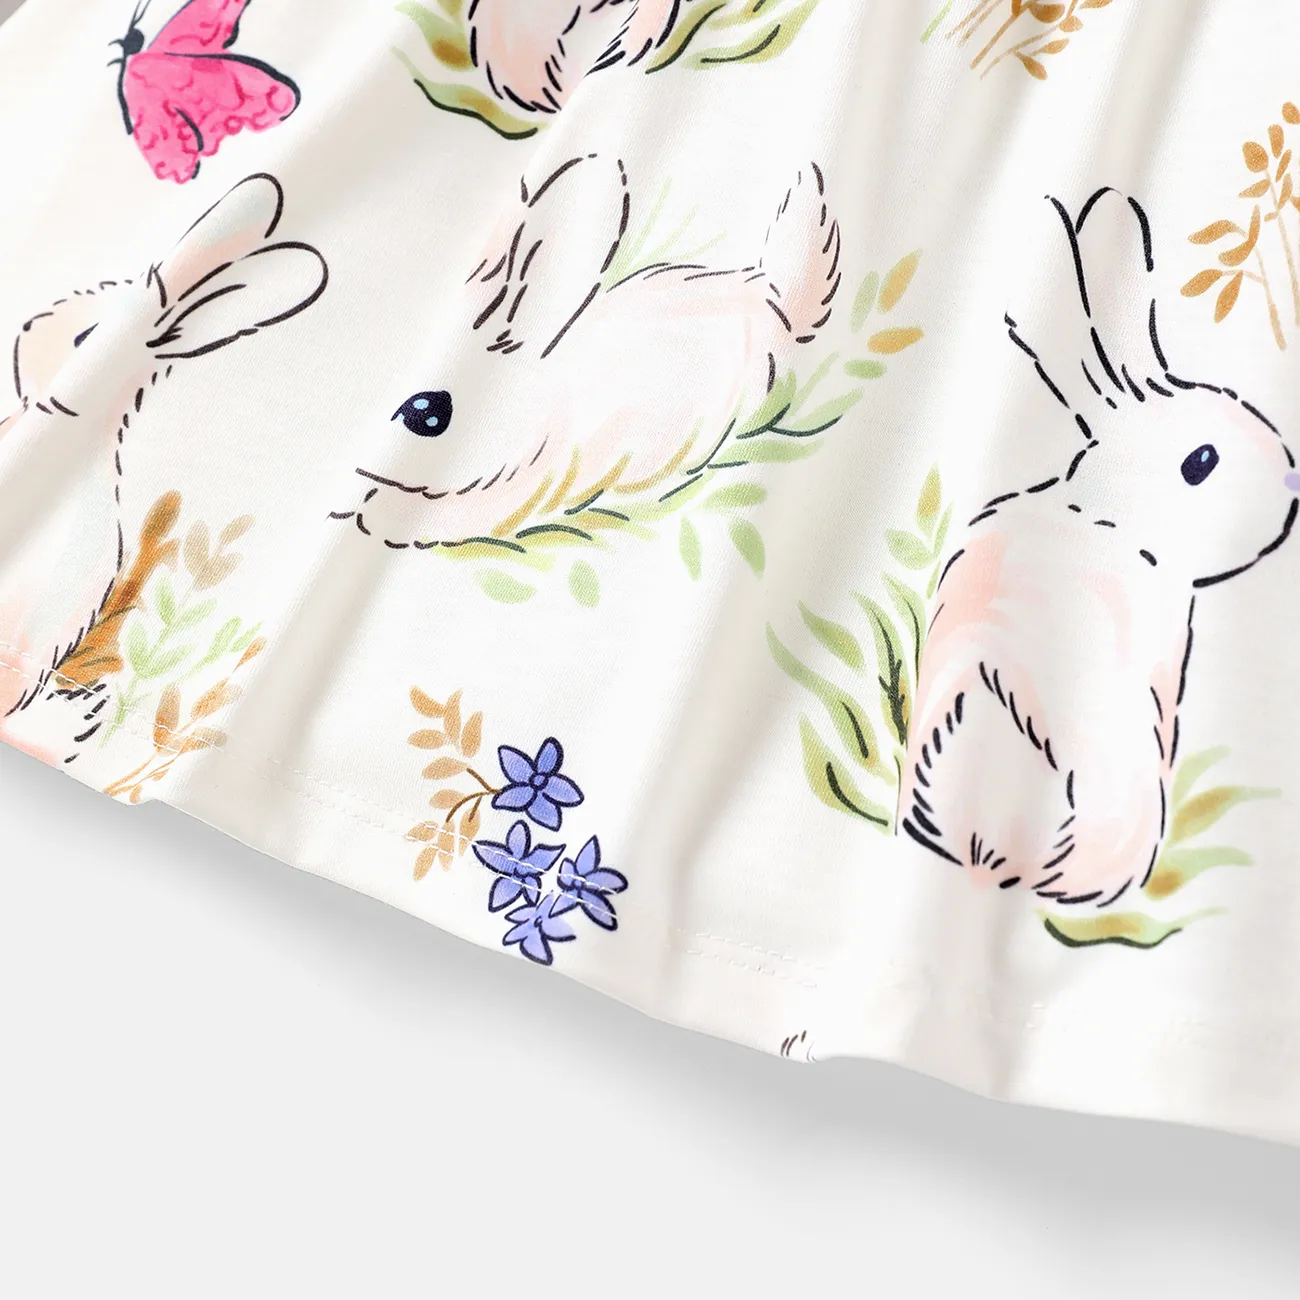 Baby Girl Allover Rabbit Print Long-sleeve Naia™ Dress Colorful big image 1